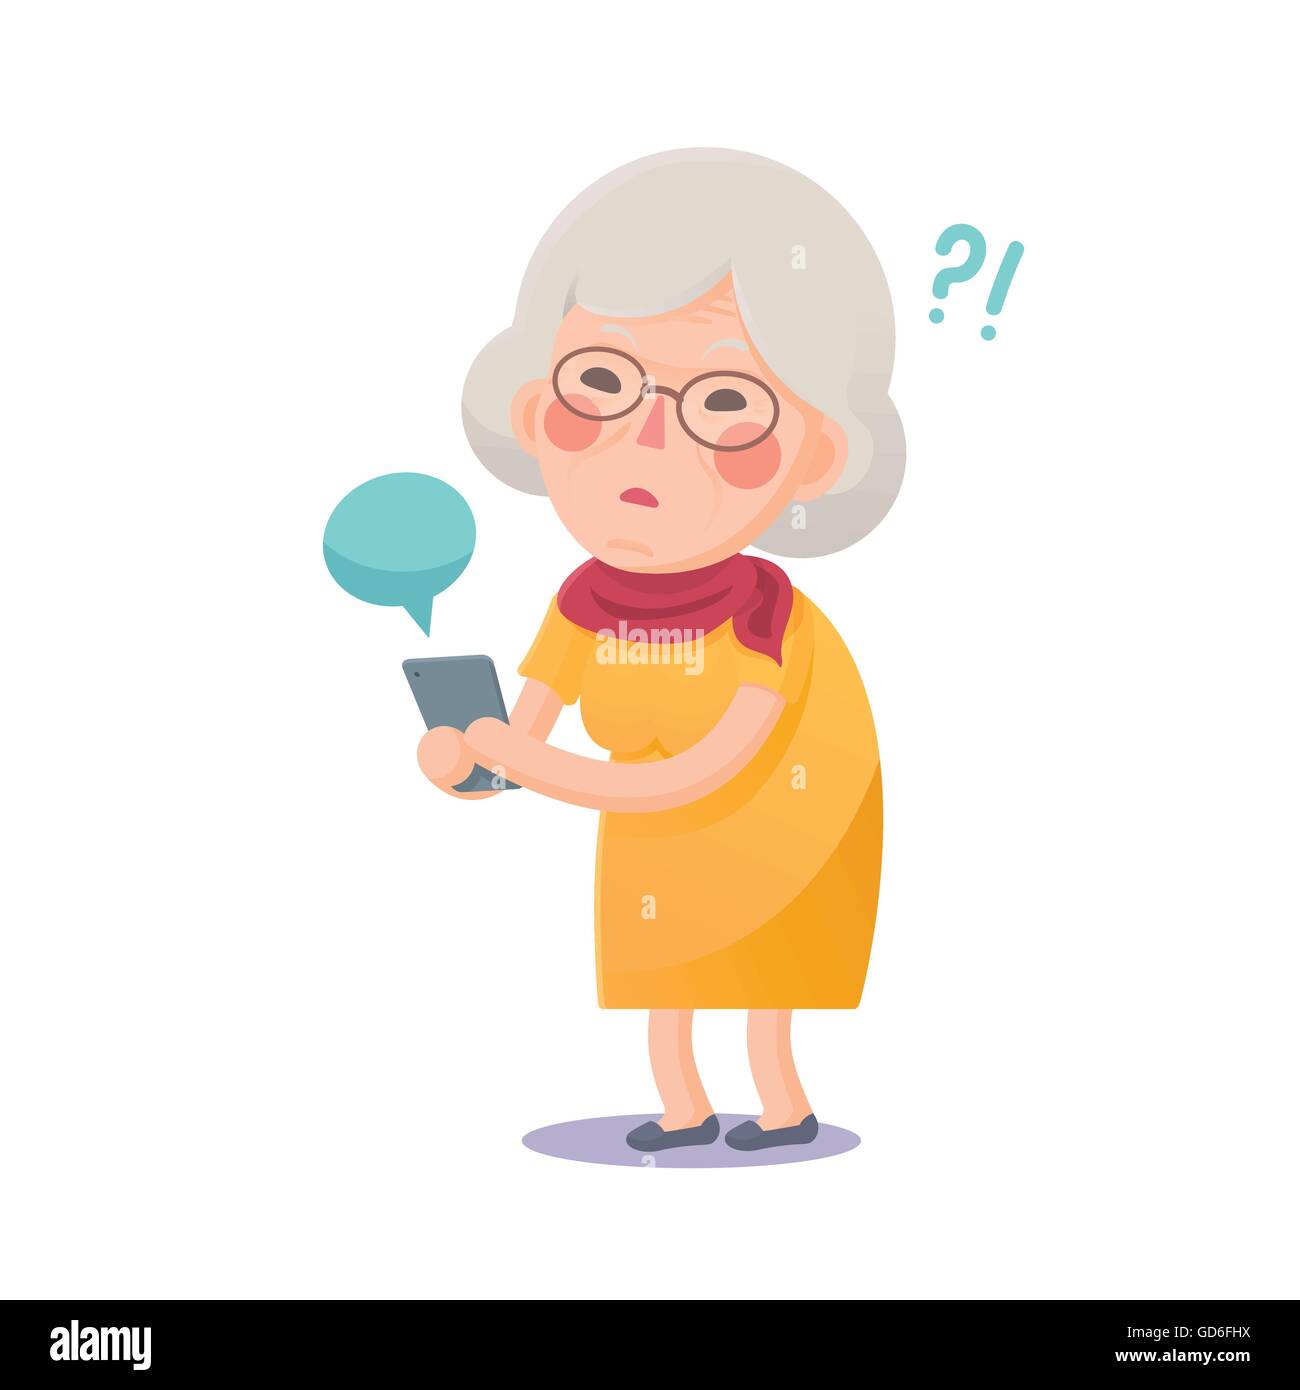 Illustrazione Vettoriale di confuse nonna utilizzando Smart Phone isolati su sfondo bianco, il simpatico personaggio dei fumetti Illustrazione Vettoriale